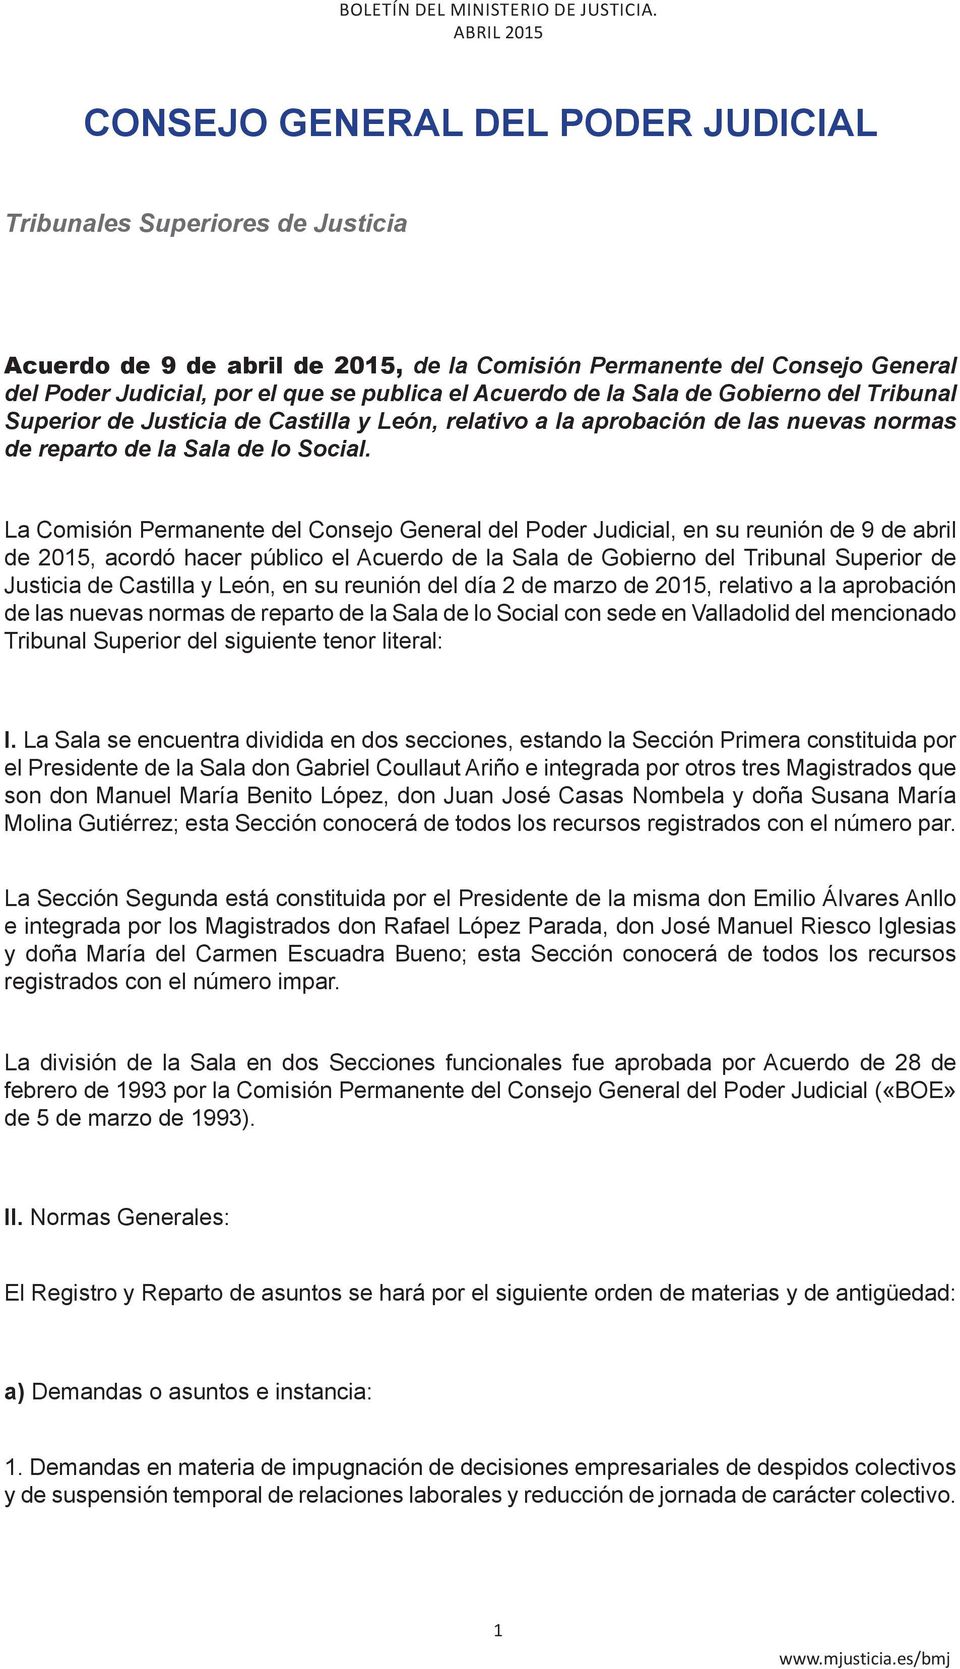 La Comisión Permanente del Consejo General del Poder Judicial, en su reunión de 9 de abril de 2015, acordó hacer público el Acuerdo de la Sala de Gobierno del Tribunal Superior de Justicia de